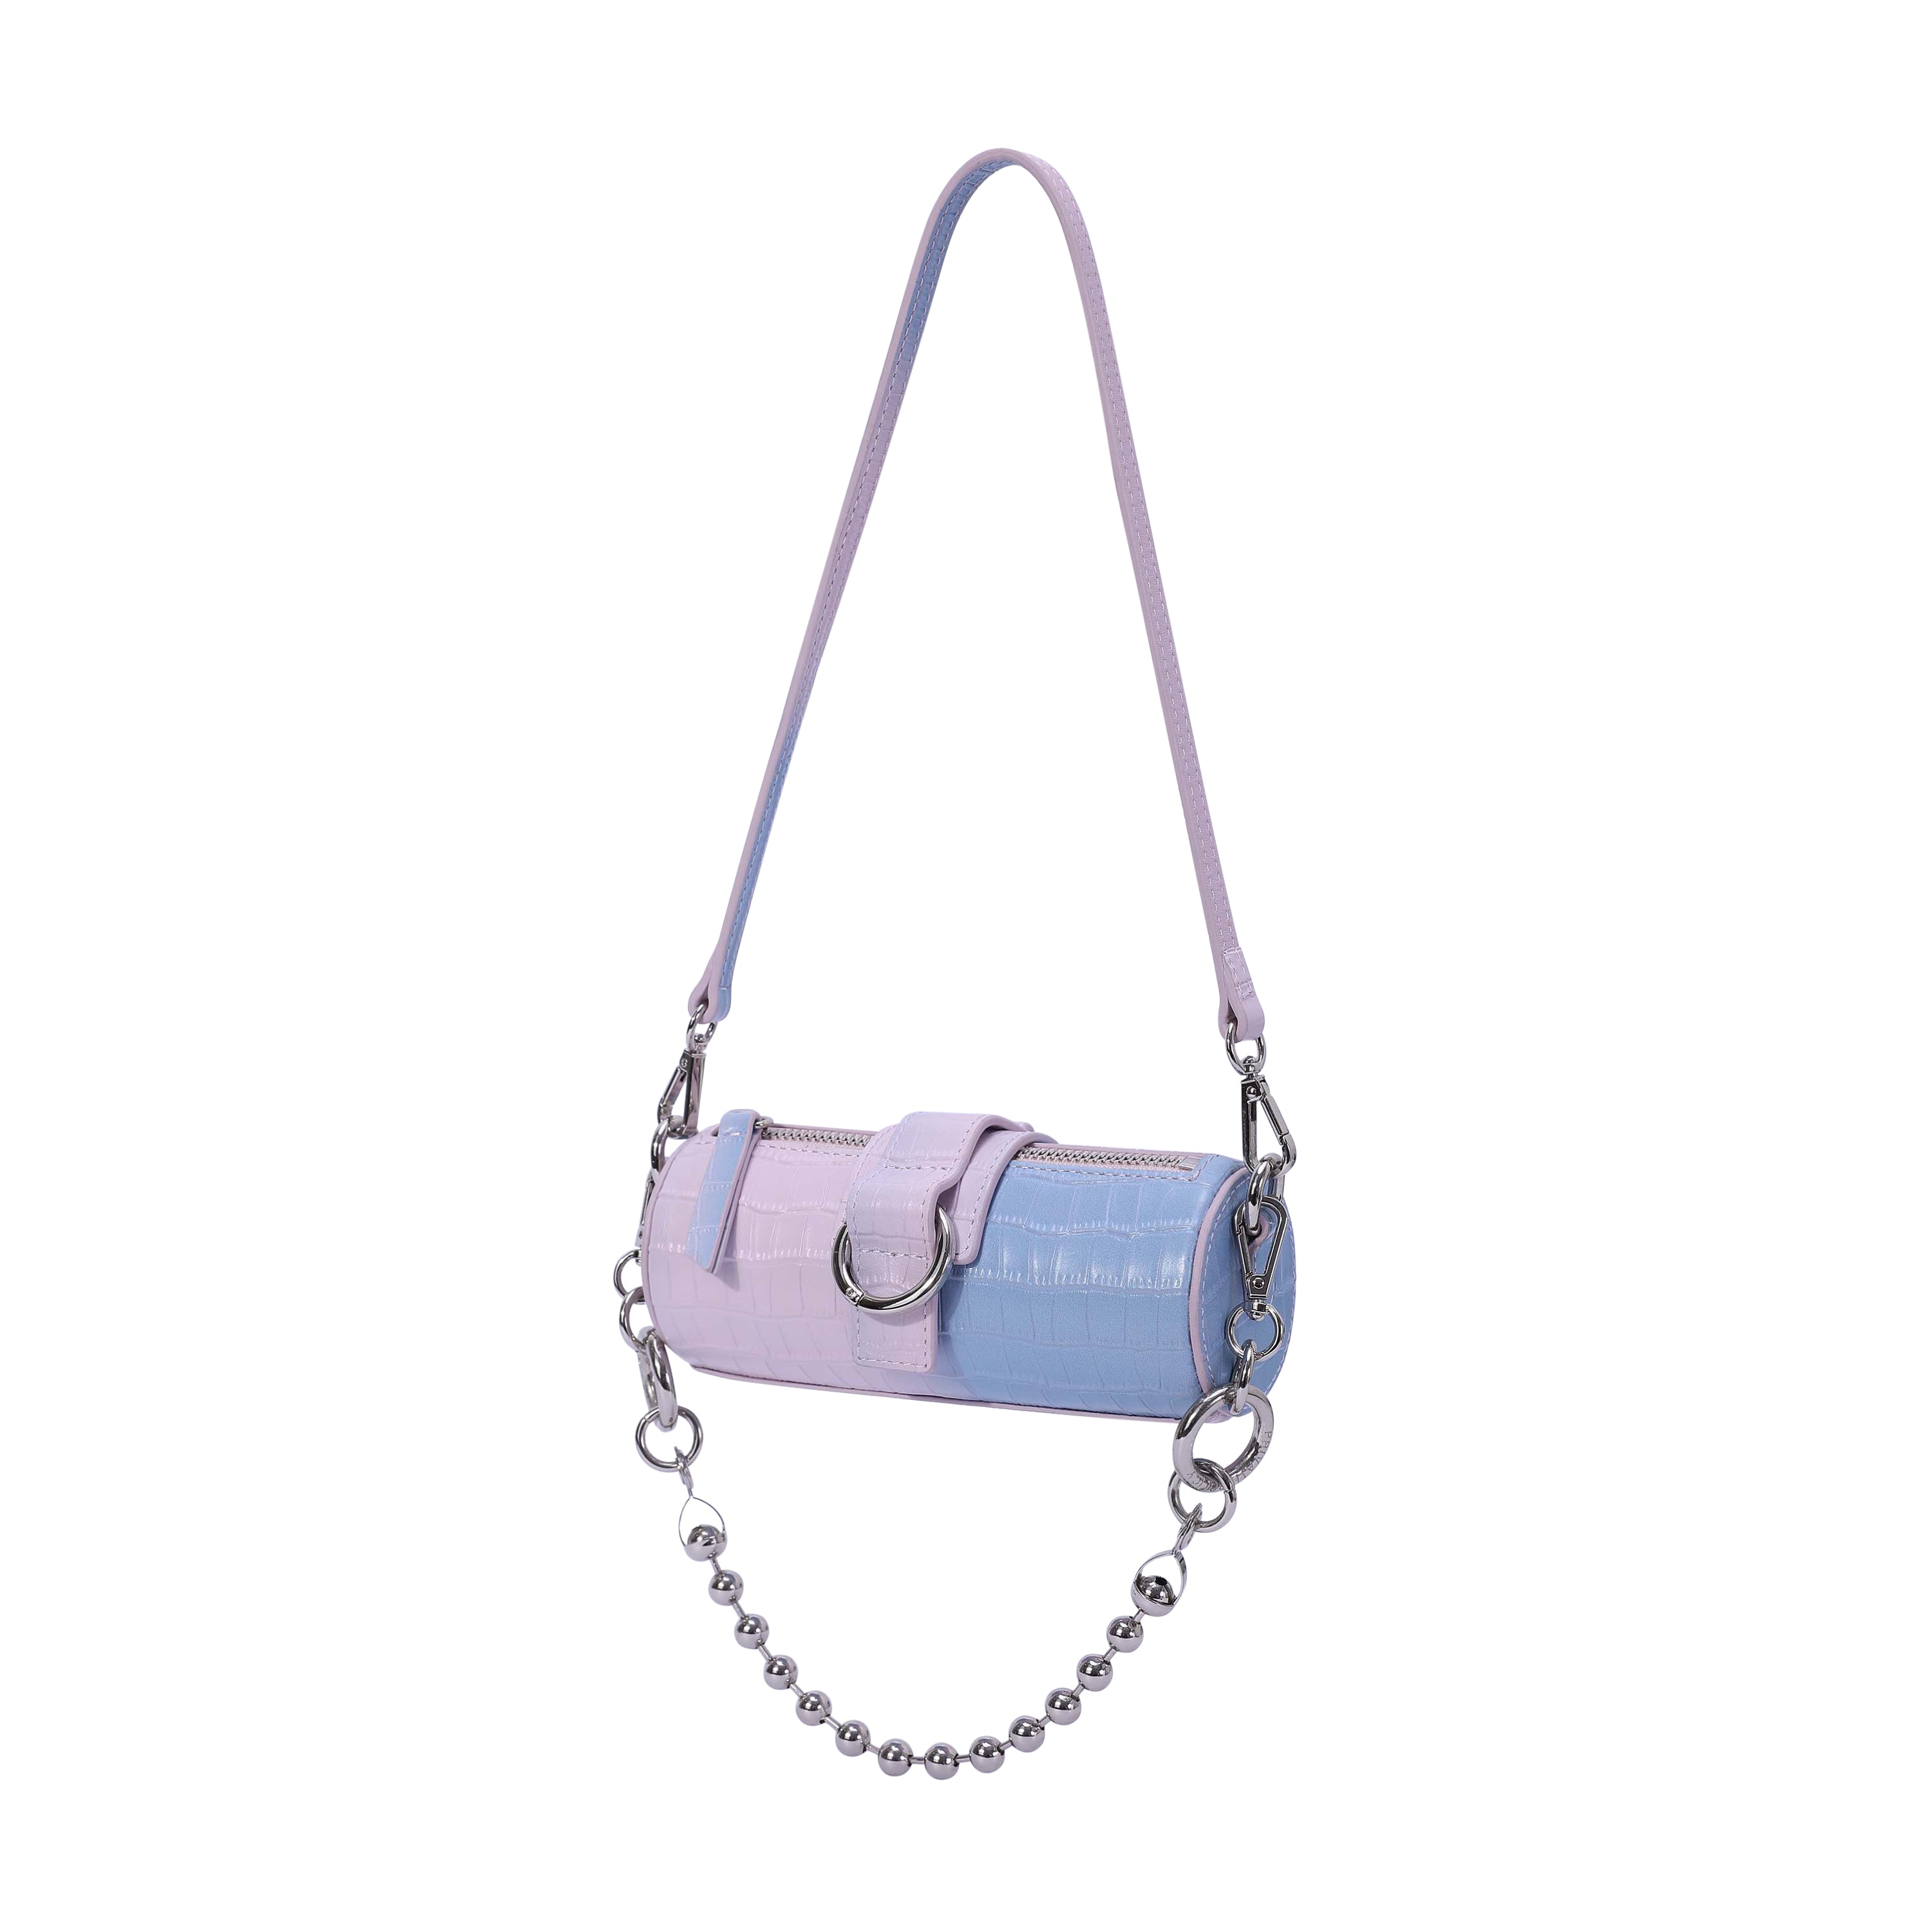 Buy Women Lilac Casual Handbag Online - 929119 | Allen Solly